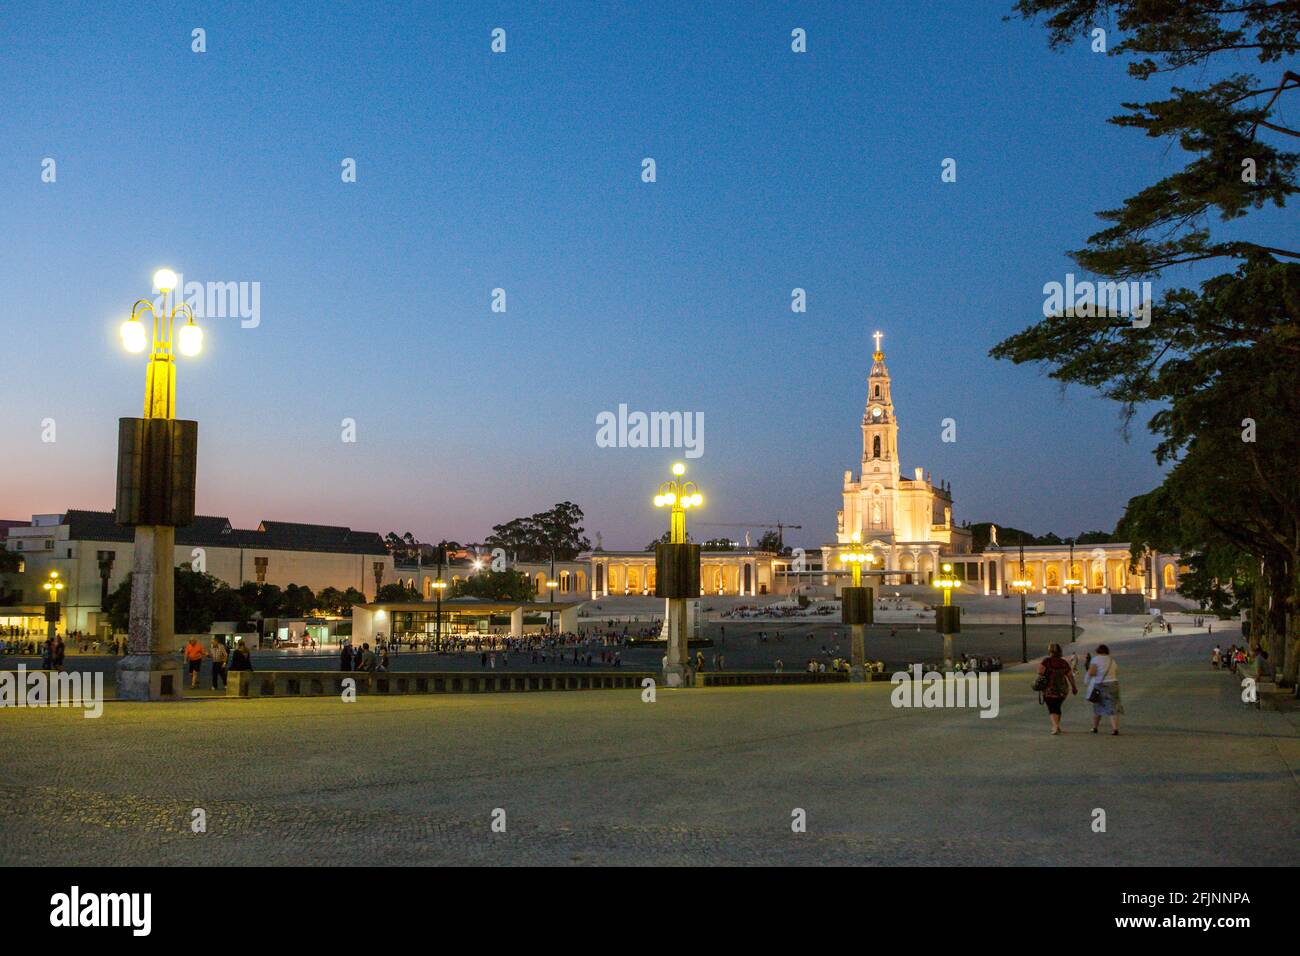 Le sanctuaire de Fatima à la tombée de la nuit d'été, où les pèlerins chrétiens se rencontrent traditionnellement en mai et octobre de chaque année - le Portugal. Banque D'Images